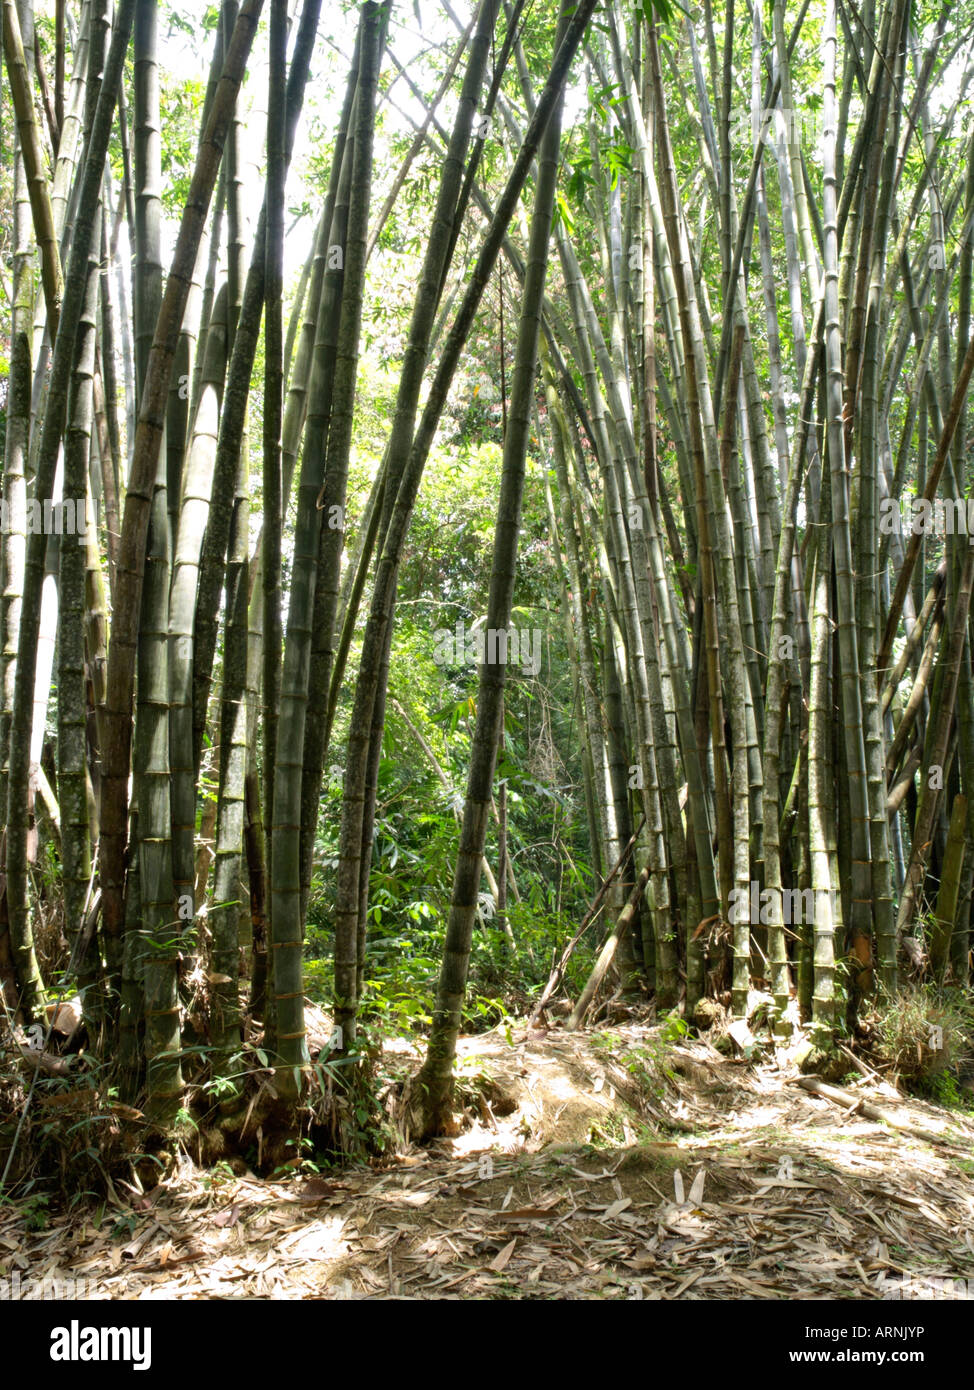 Giant bamboo (Dendrocalamus giganteus) Stock Photo